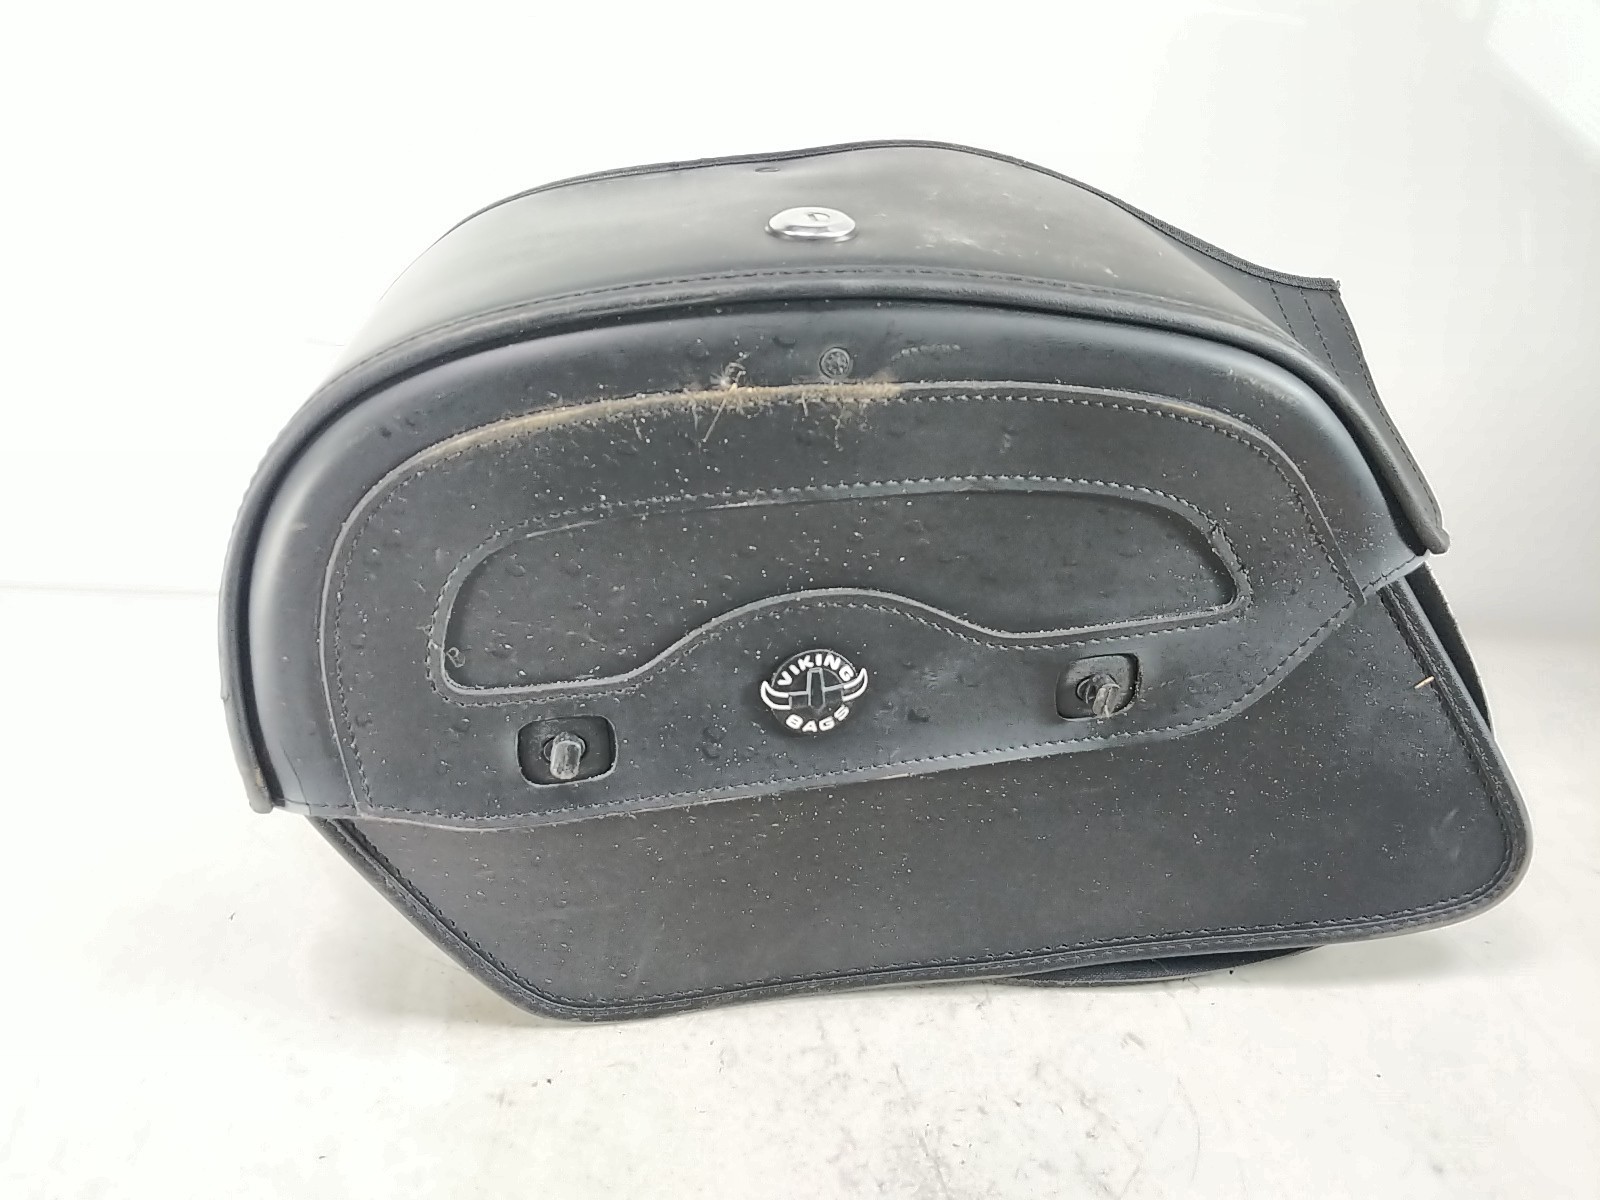 05 Yamaha V Star XVS 1100 Saddle Bag Luggage Case DAMAGED G